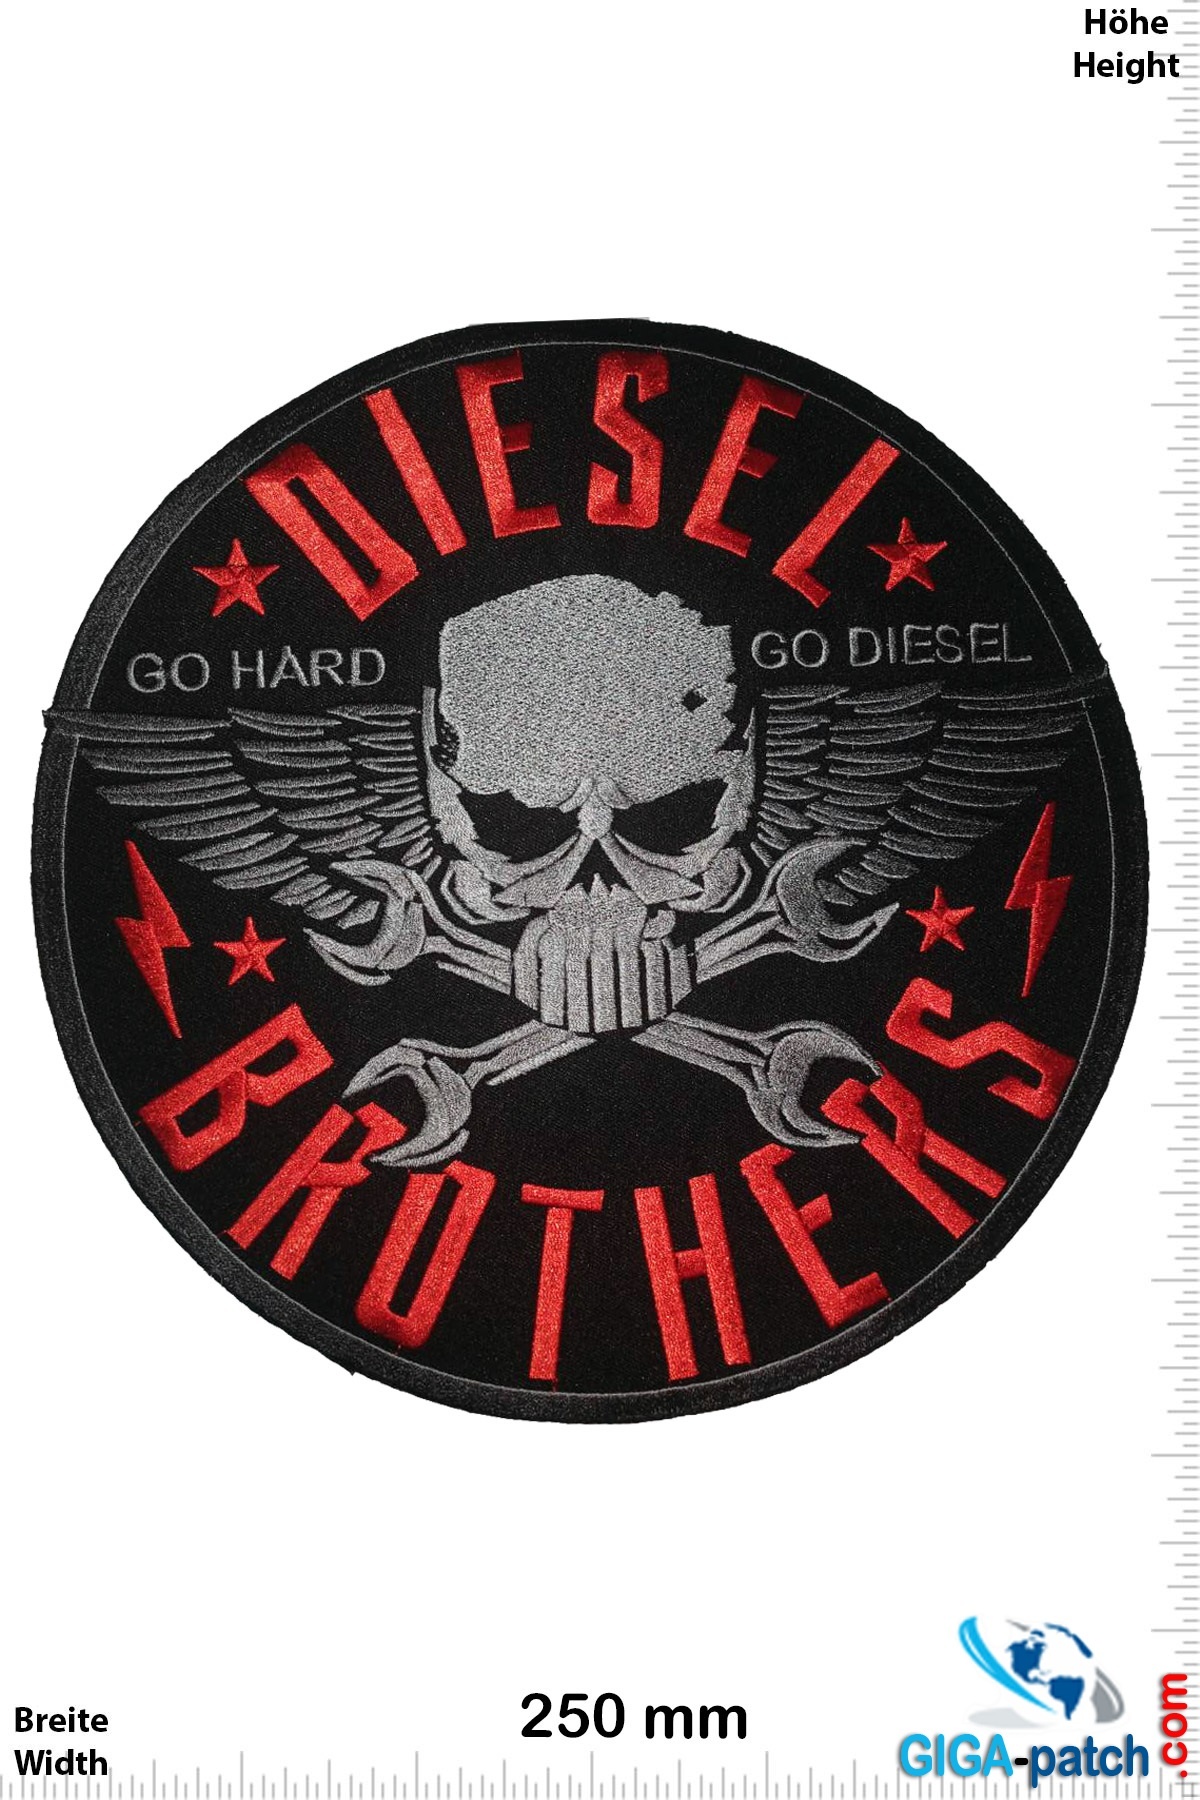 Diesel Brother - Go Hard Go Diesel - 25 cm